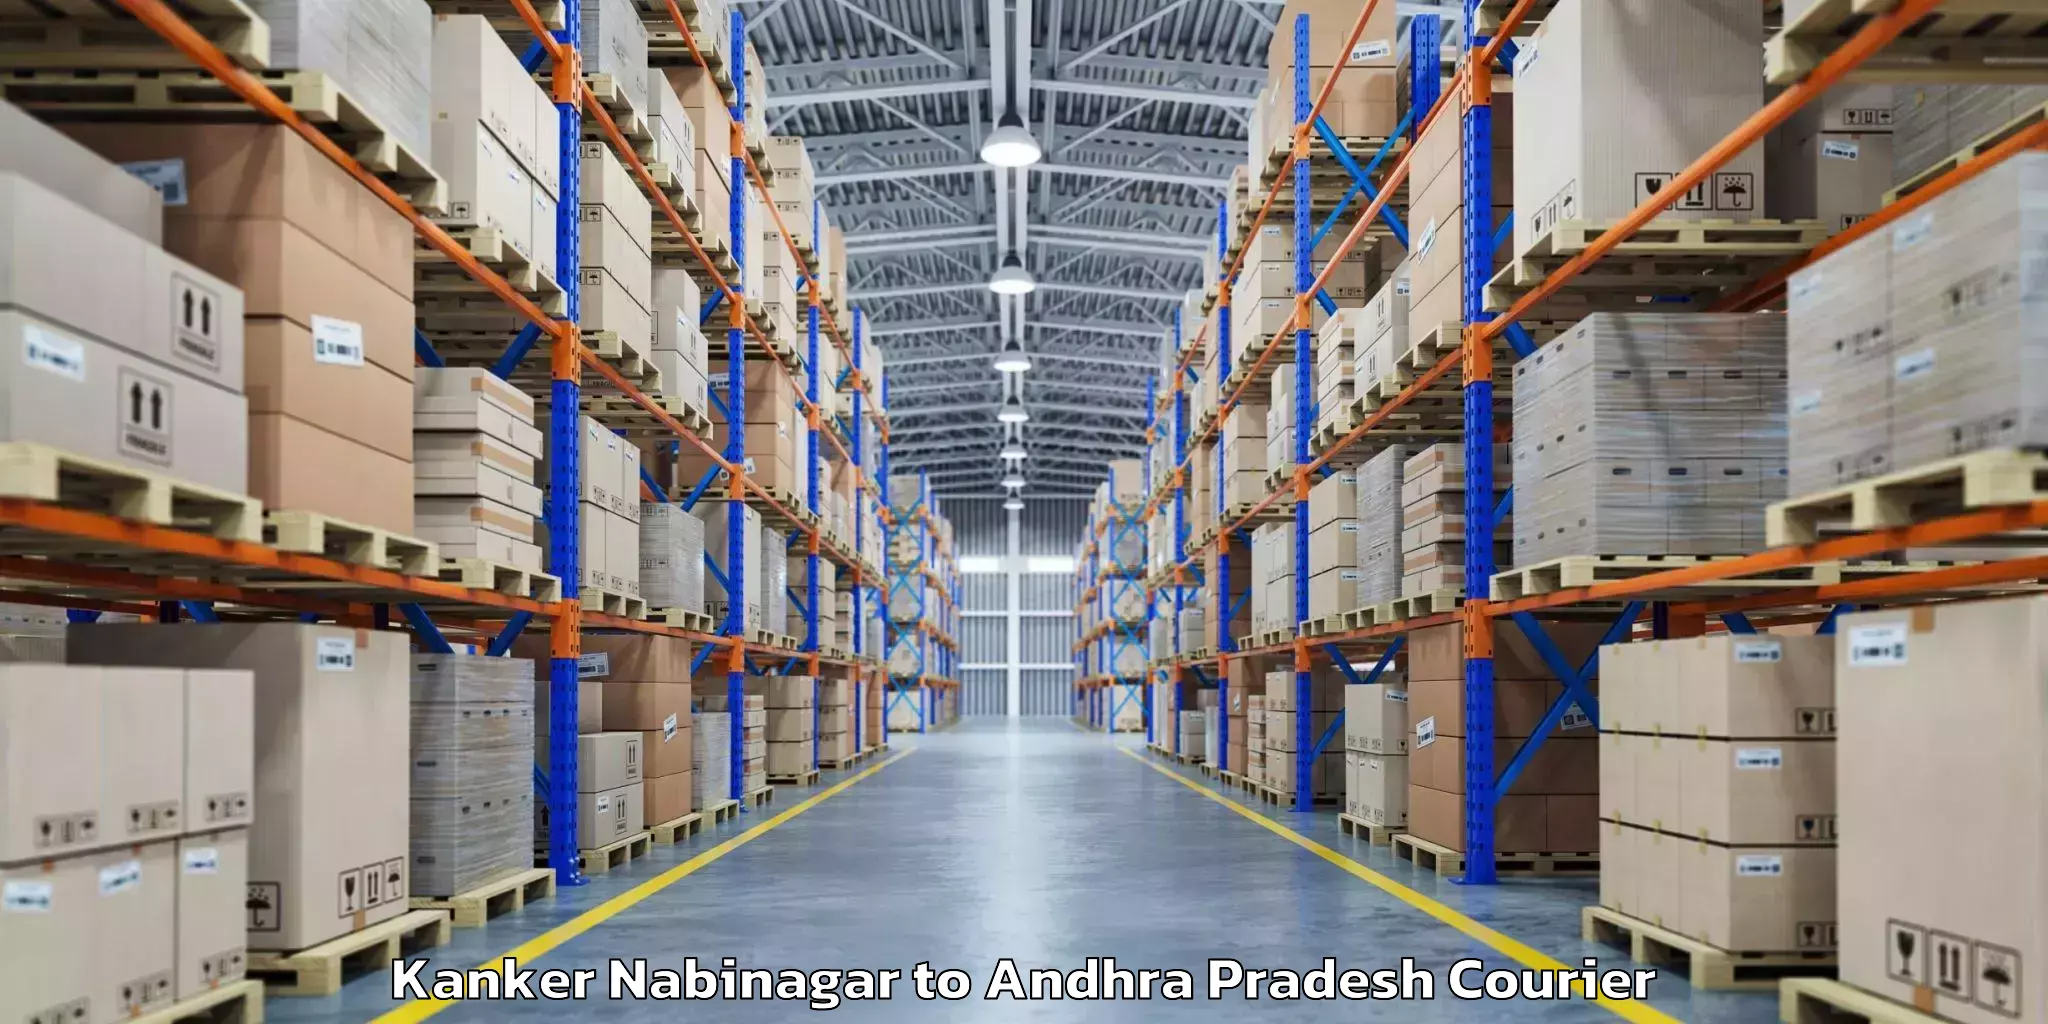 Luggage transport service Kanker Nabinagar to Andhra Pradesh